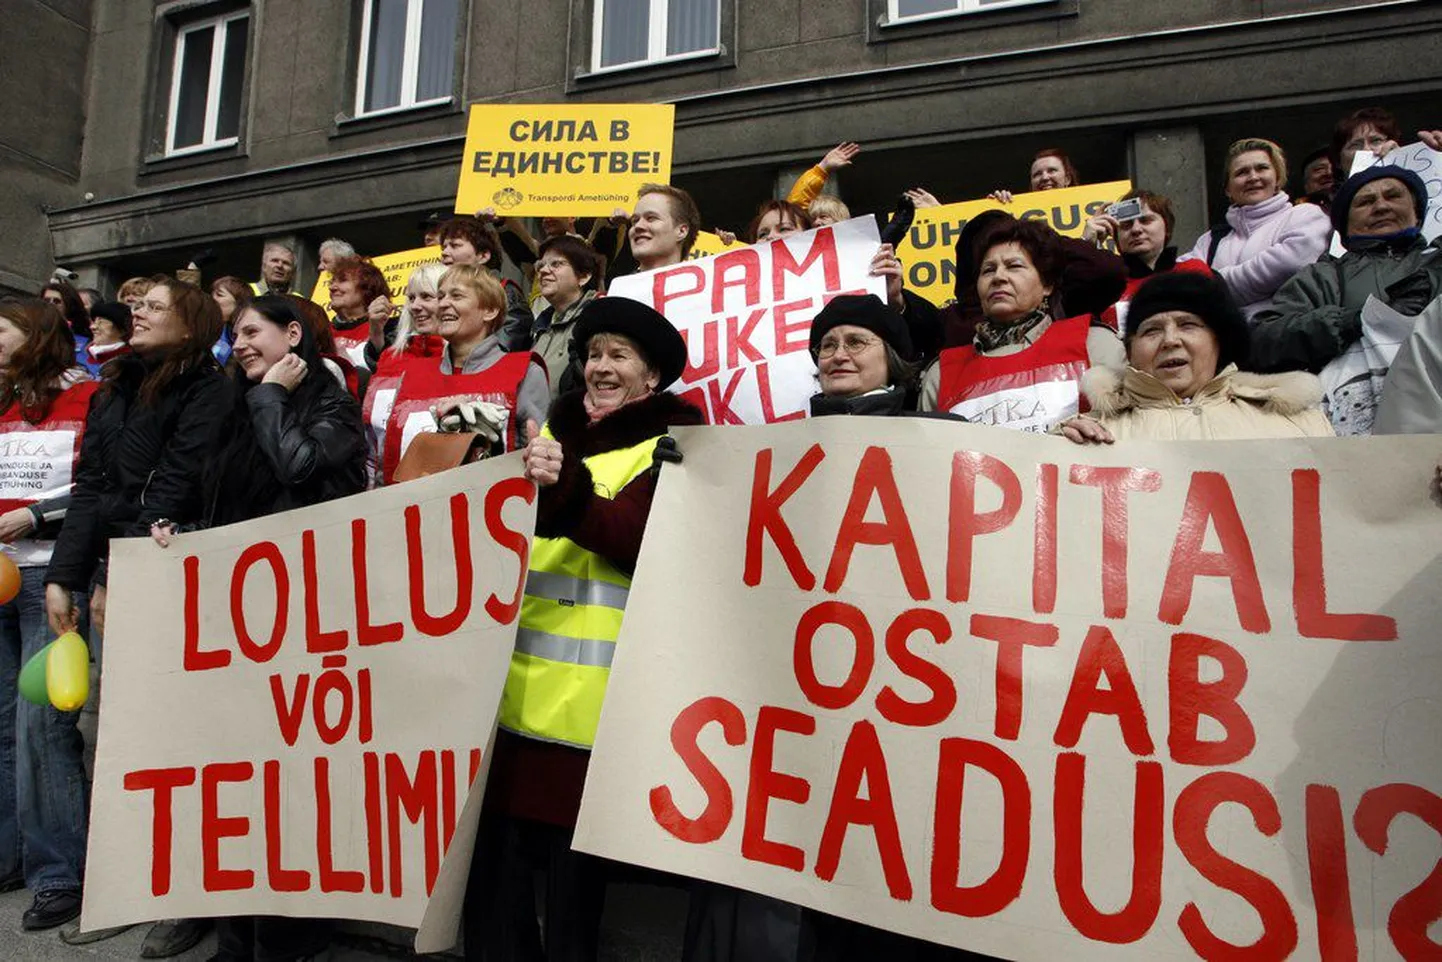 Eelmise aasta kevadel piketeerisid Eesti ametiühingud usaldusisiku seaduse vastu.